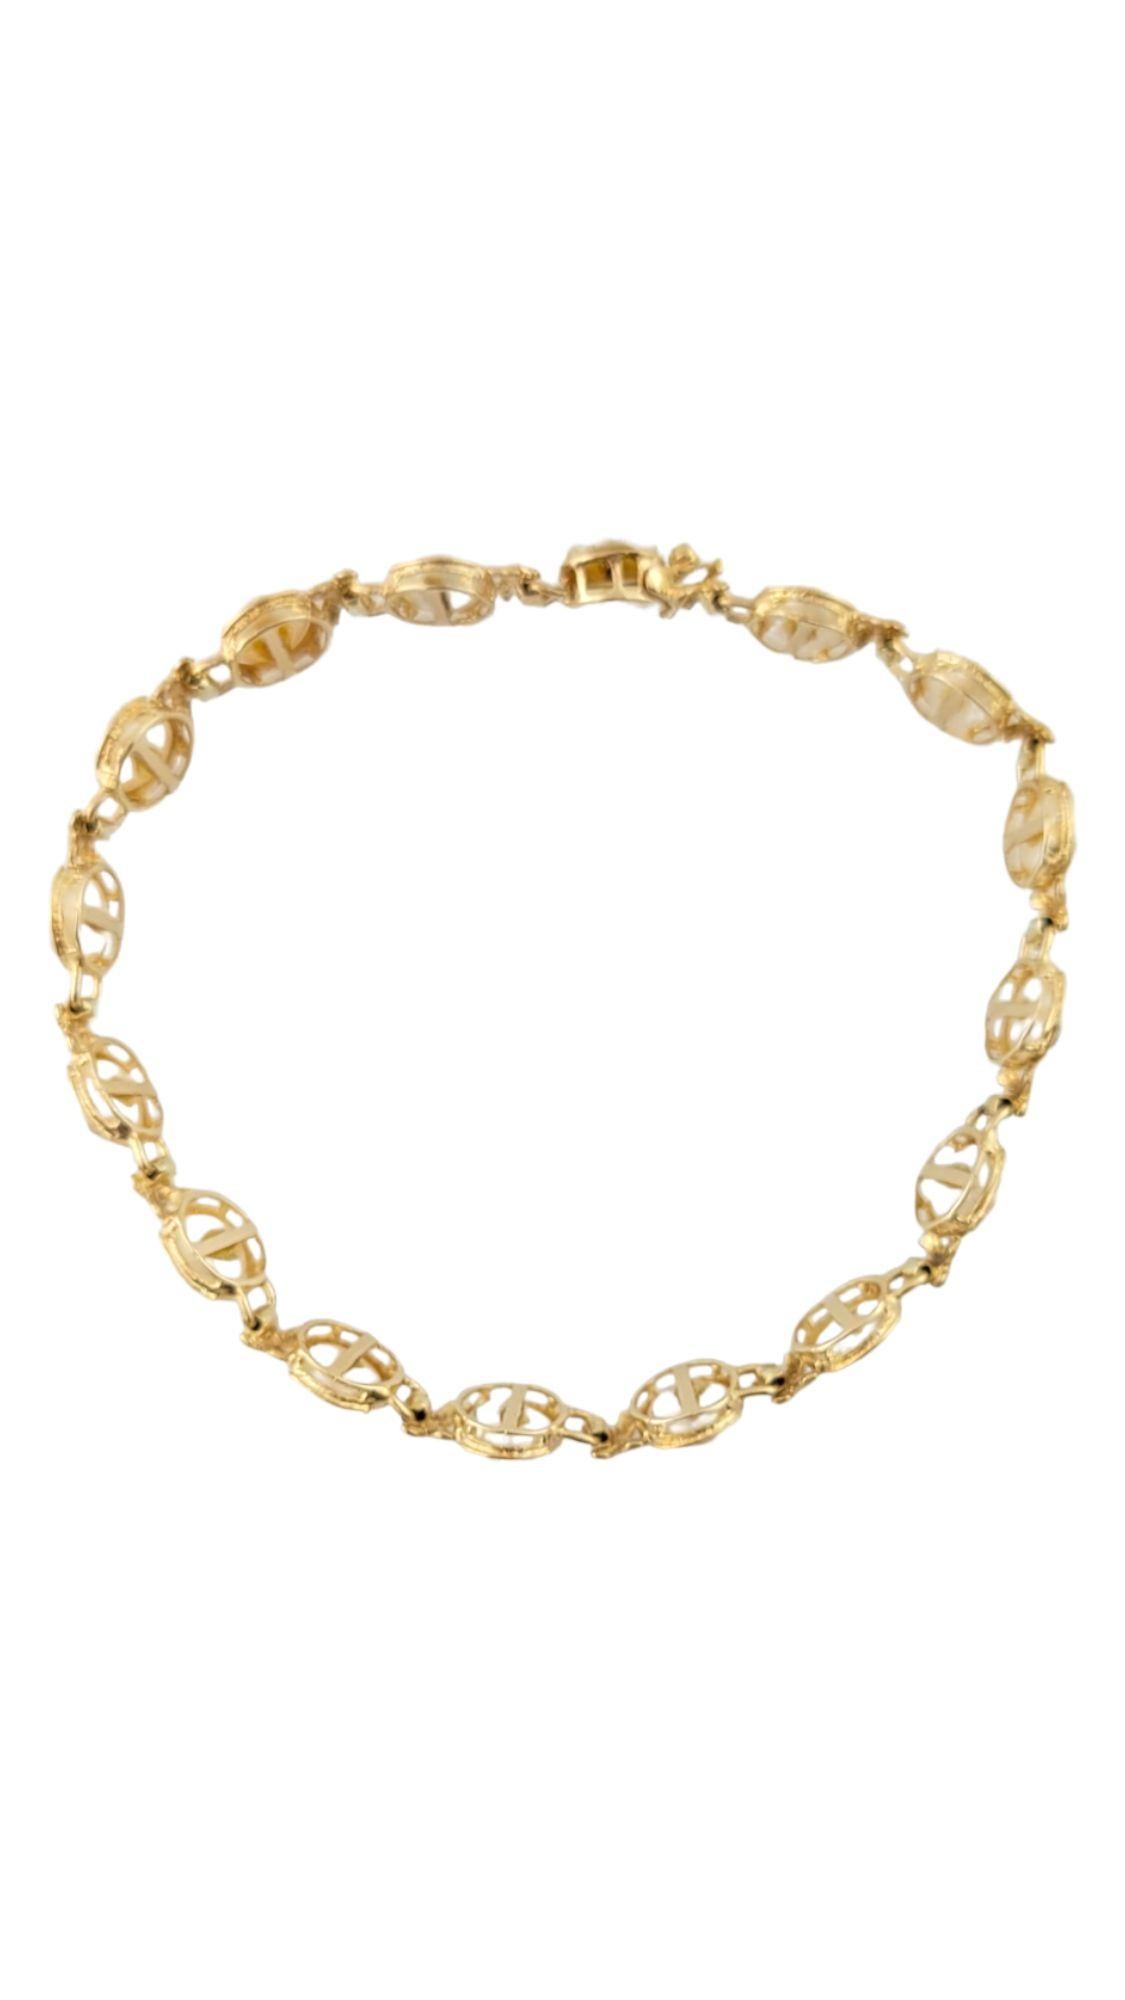 Dieses wunderschöne Armband aus 14 Karat Gelbgold ist mit 16 wunderschönen Süßwasserperlen gepaart!

Perlen: 6mm

Länge des Armbands: 6 3/4